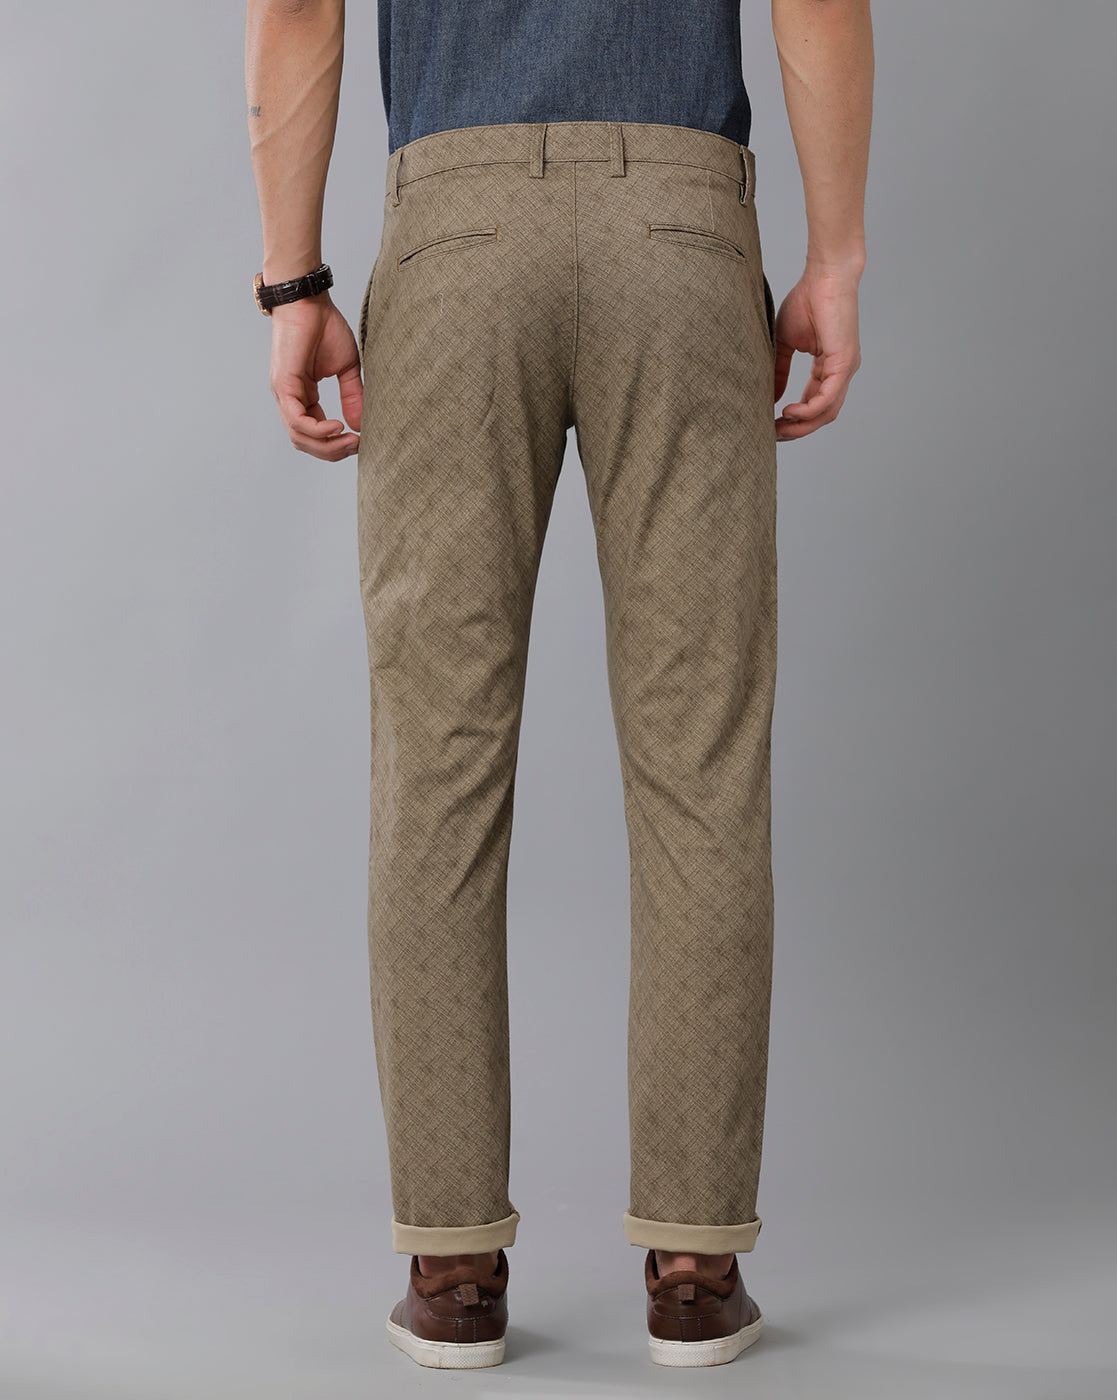 NEW Genuine Dickies work pant, slim fit, tapered leg - Khaki Color | Dickie  work pants, Khaki color, Work pants